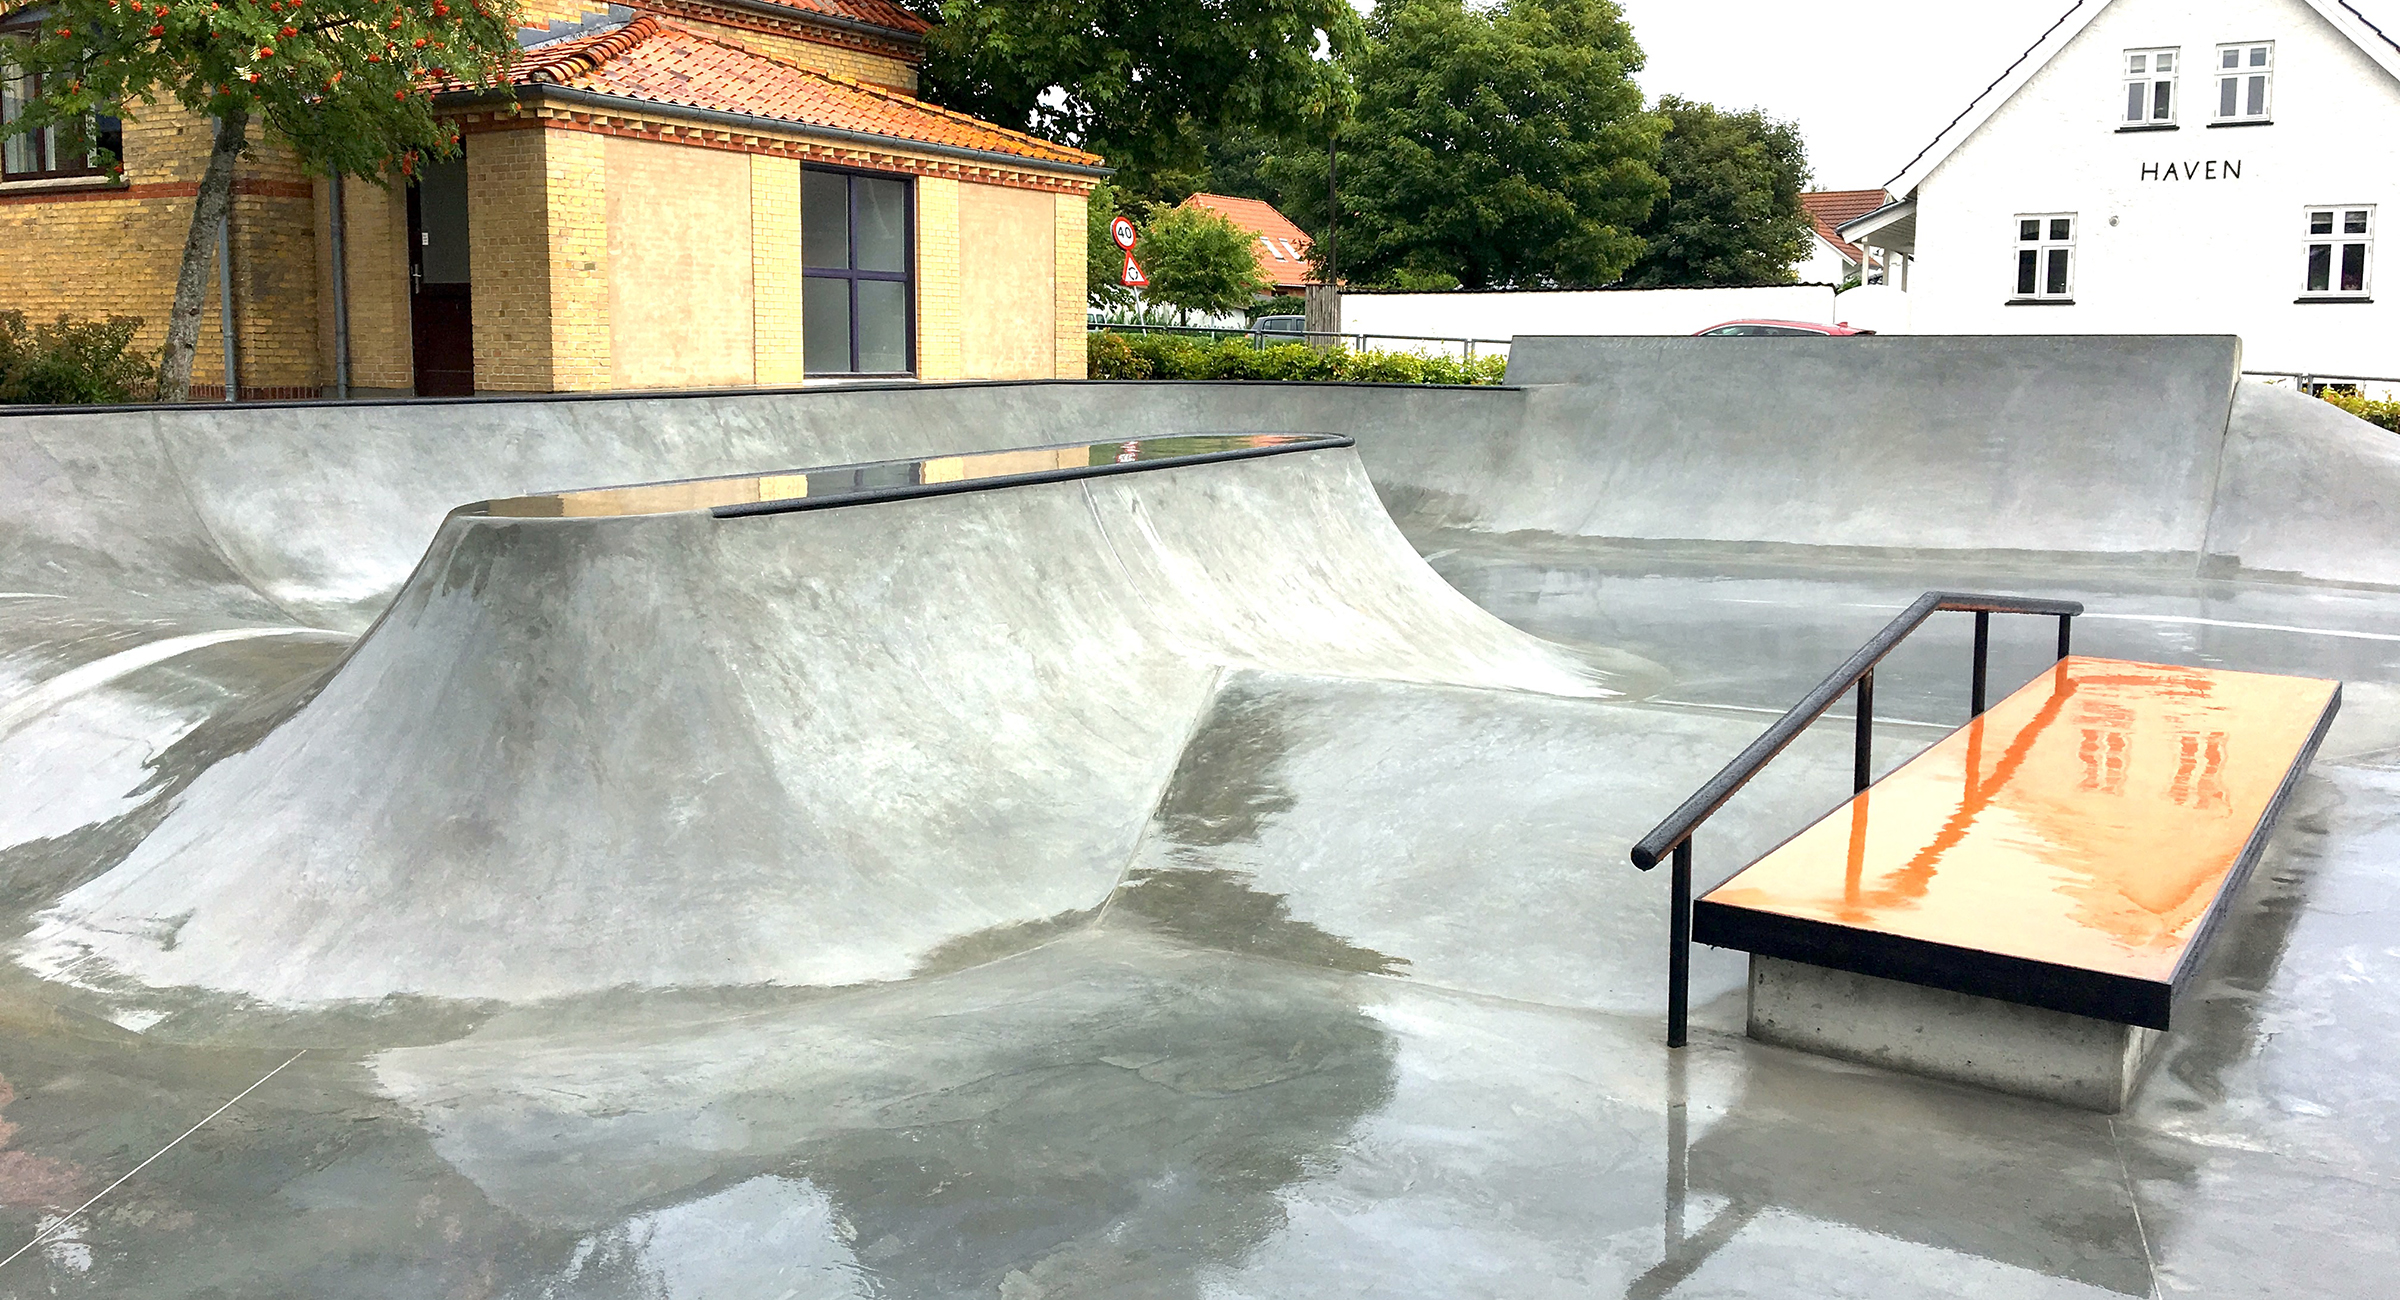 Billedet viser en skaterampe i beton med gelænder og en curb ved siden af